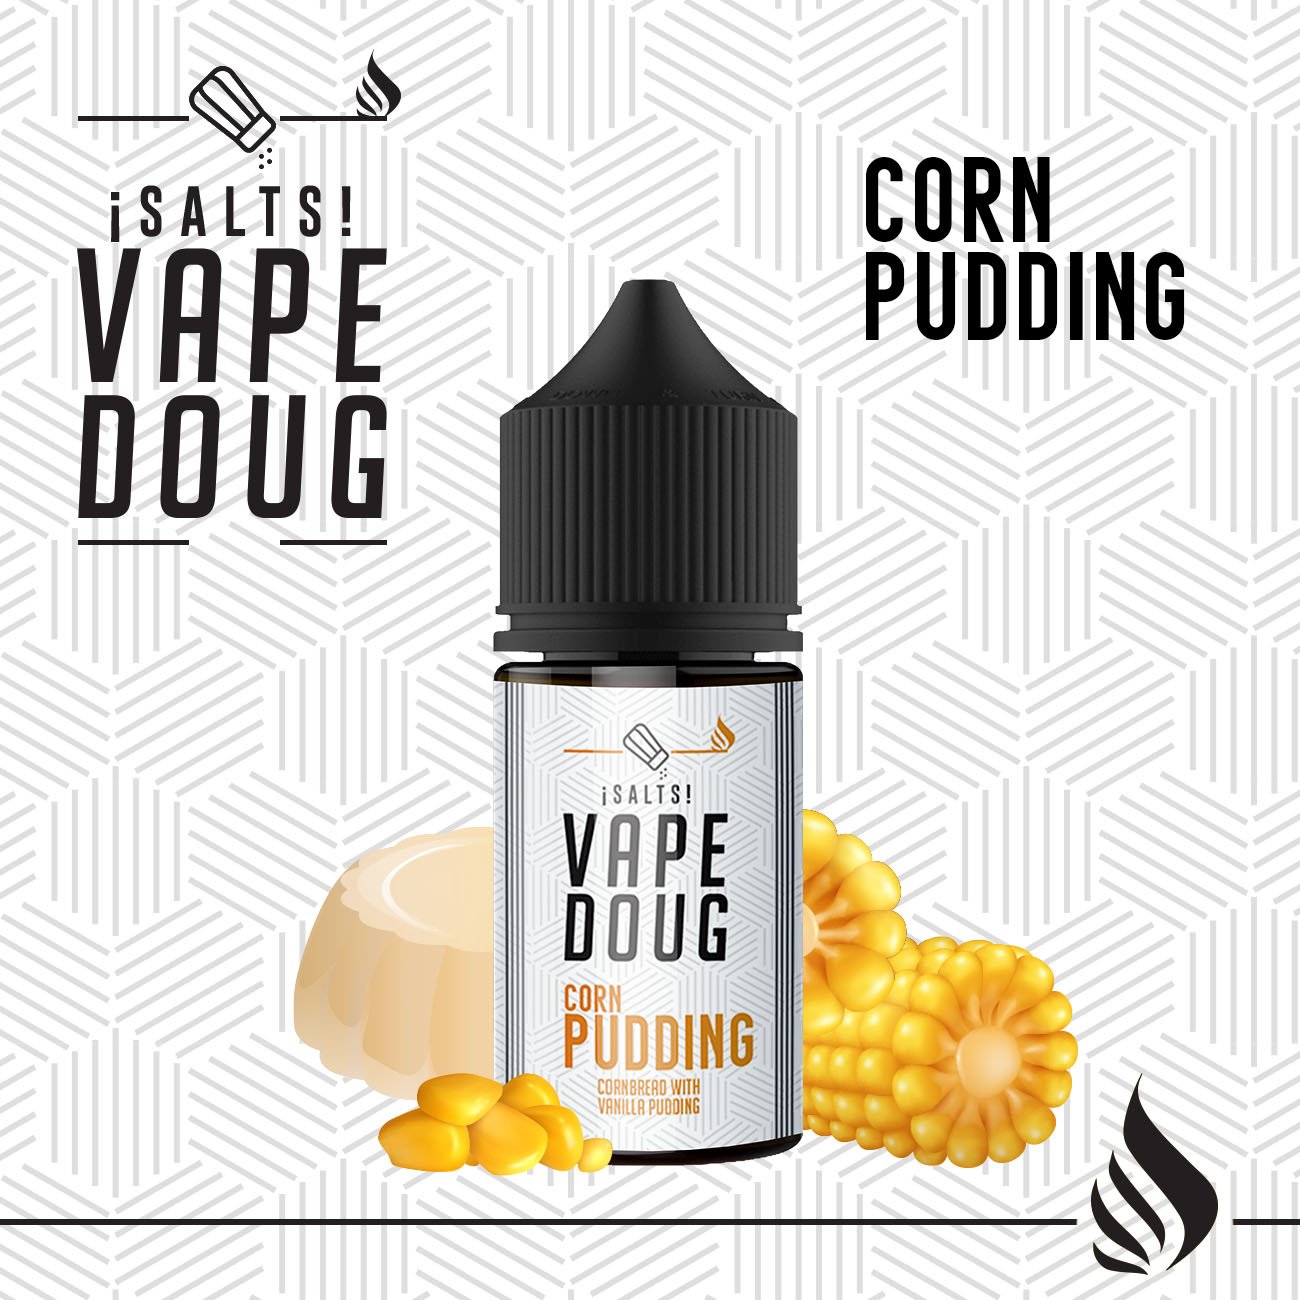 Doug Corn Pudding 30ml con Sales de nicotina 20/30/40 mg/ml